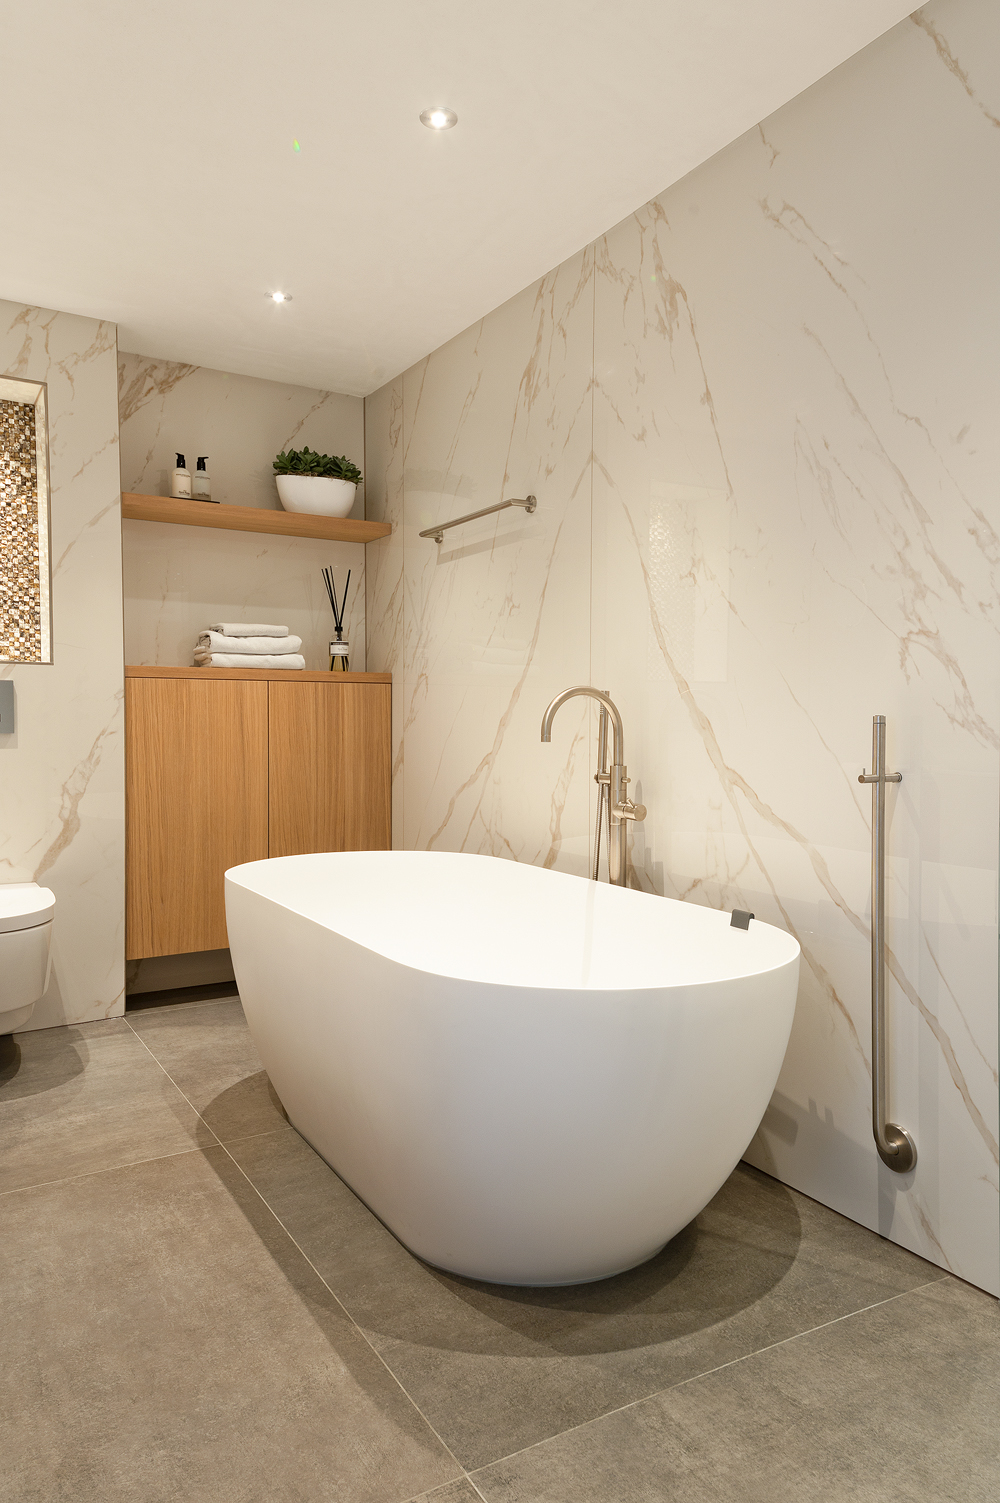 Foto : Project: lichte badkamer met vrijstaand bad | Luca Sanitair